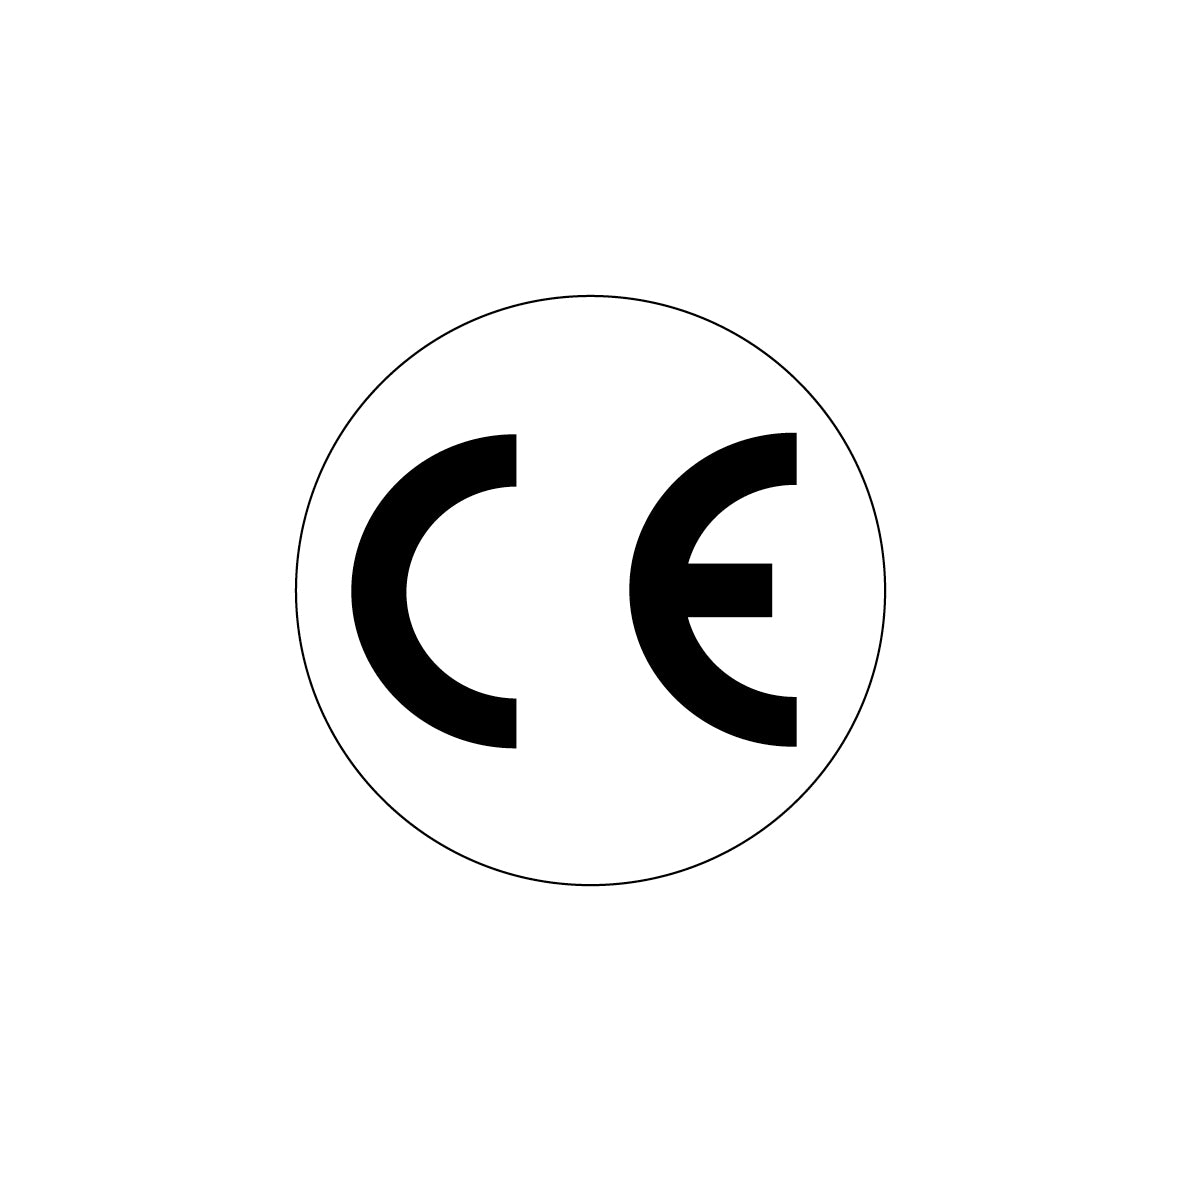 CE-Zeichen, ø 10 mm, PET, weiss/schwarz, VE = 1000 Stk., auf Bogen